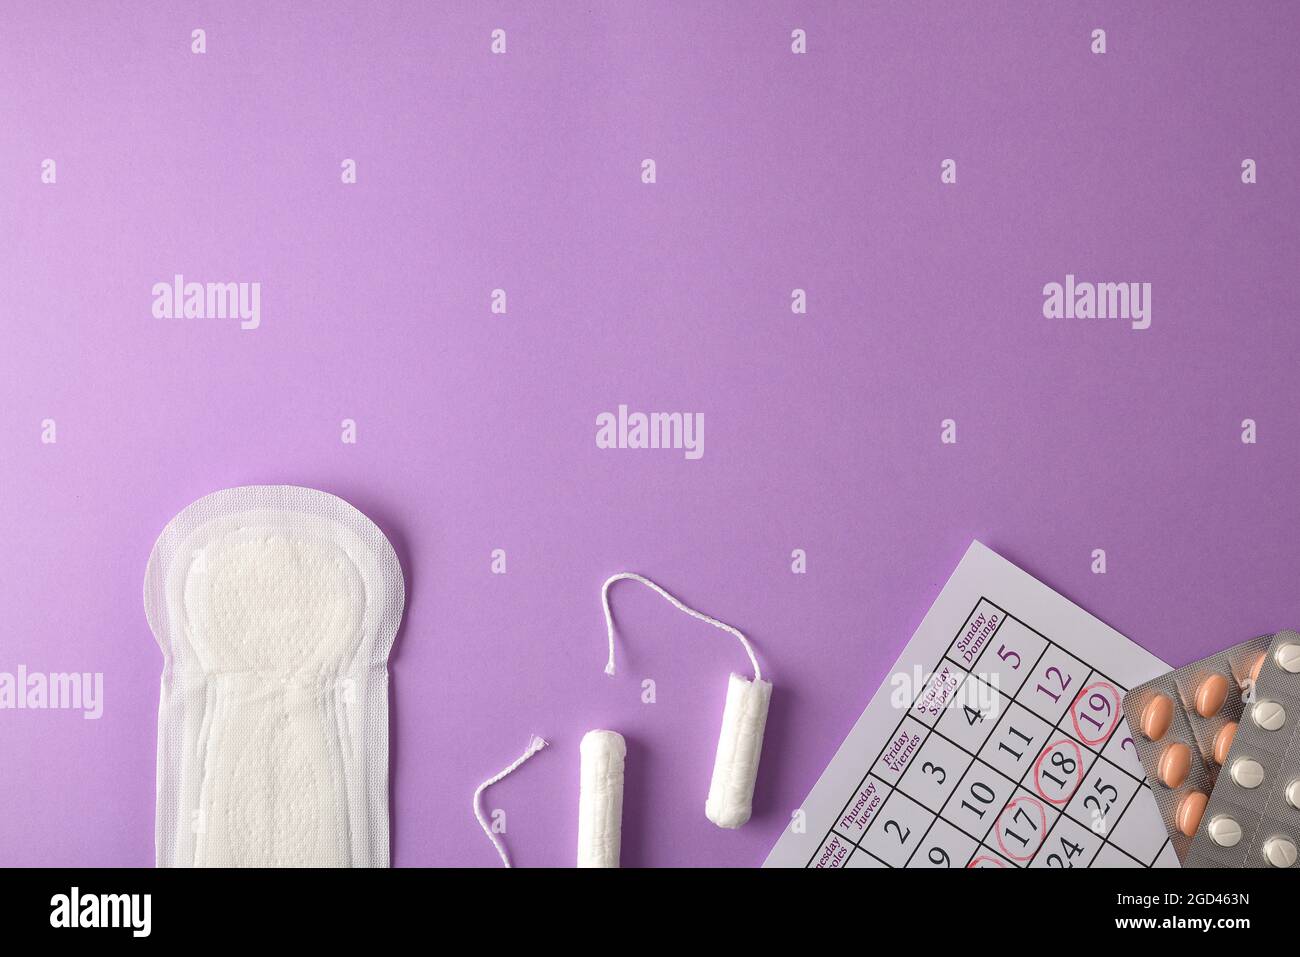 Hintergrund mit Menstruationsprodukten Paket, Kalender mit markierten Tampons für kritische Tage und Pads auf lila Hintergrund. Draufsicht. Stockfoto